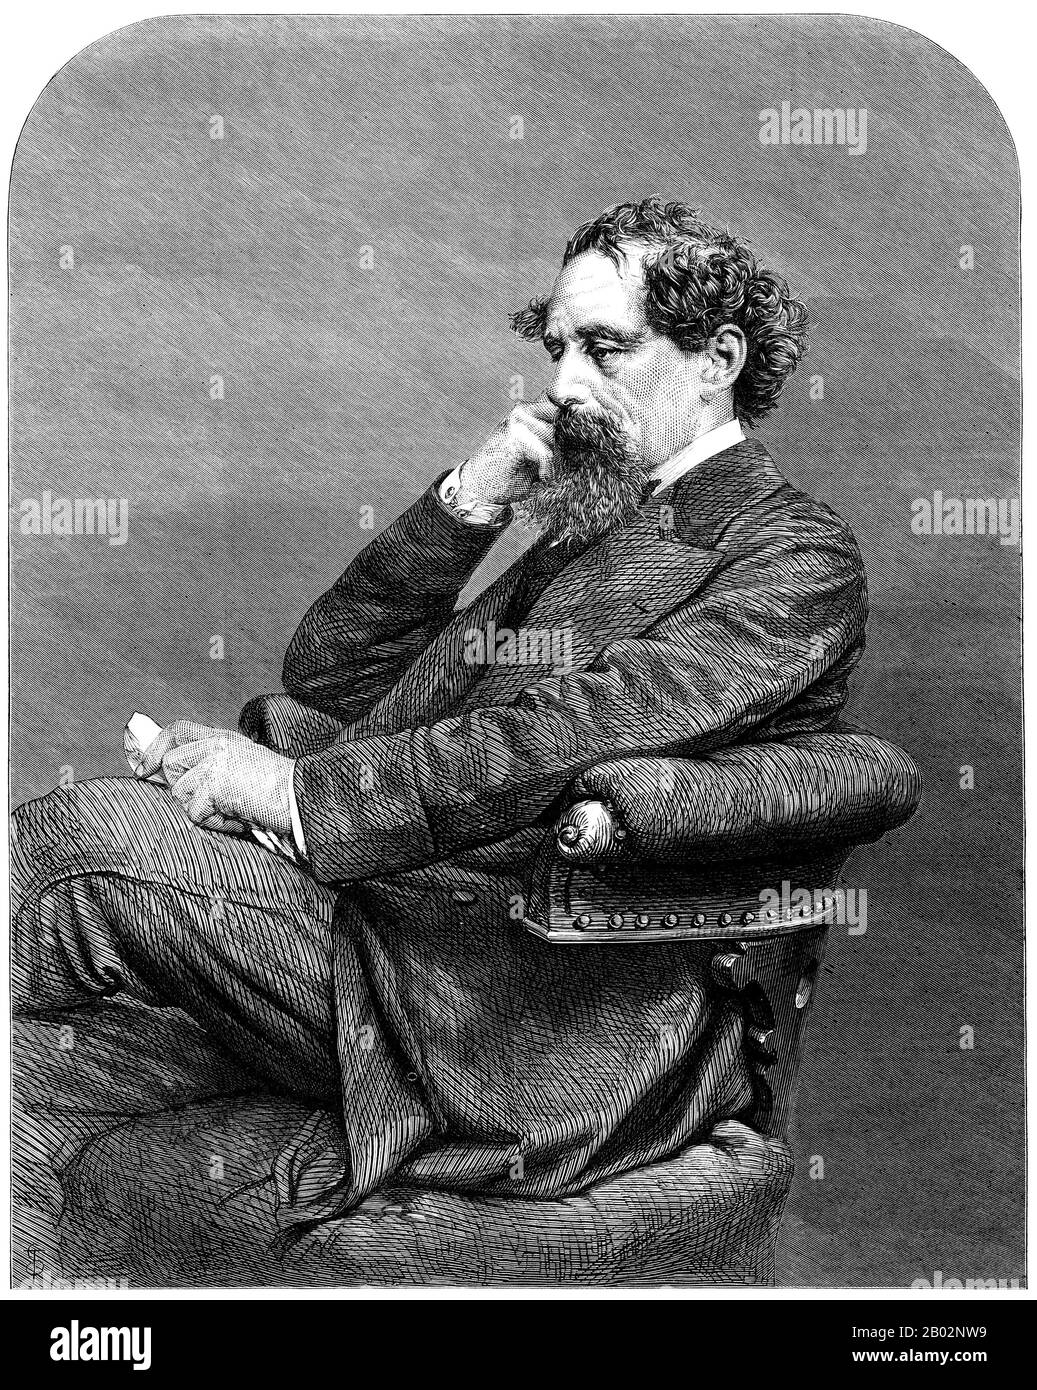 Charles John Huffam Dickens (7 febbraio 1812 – 9 giugno 1870) è stato uno scrittore inglese e critico sociale. Ha creato alcuni dei personaggi immaginari più conosciuti del mondo ed è generalmente considerato il più grande romanziere del periodo Vittoriano. Durante la sua vita, le sue opere godevano di una popolarità senza precedenti, e nel ventesimo secolo fu ampiamente visto come un genio letterario da critici e studiosi. I suoi romanzi e le sue brevi storie continuano ad essere molto popolari. Nato a Portsmouth, in Inghilterra, Dickens è stato costretto a lasciare la scuola per lavorare in una fabbrica quando suo padre è stato gettato nel carcere dei debitori. Altho Foto Stock